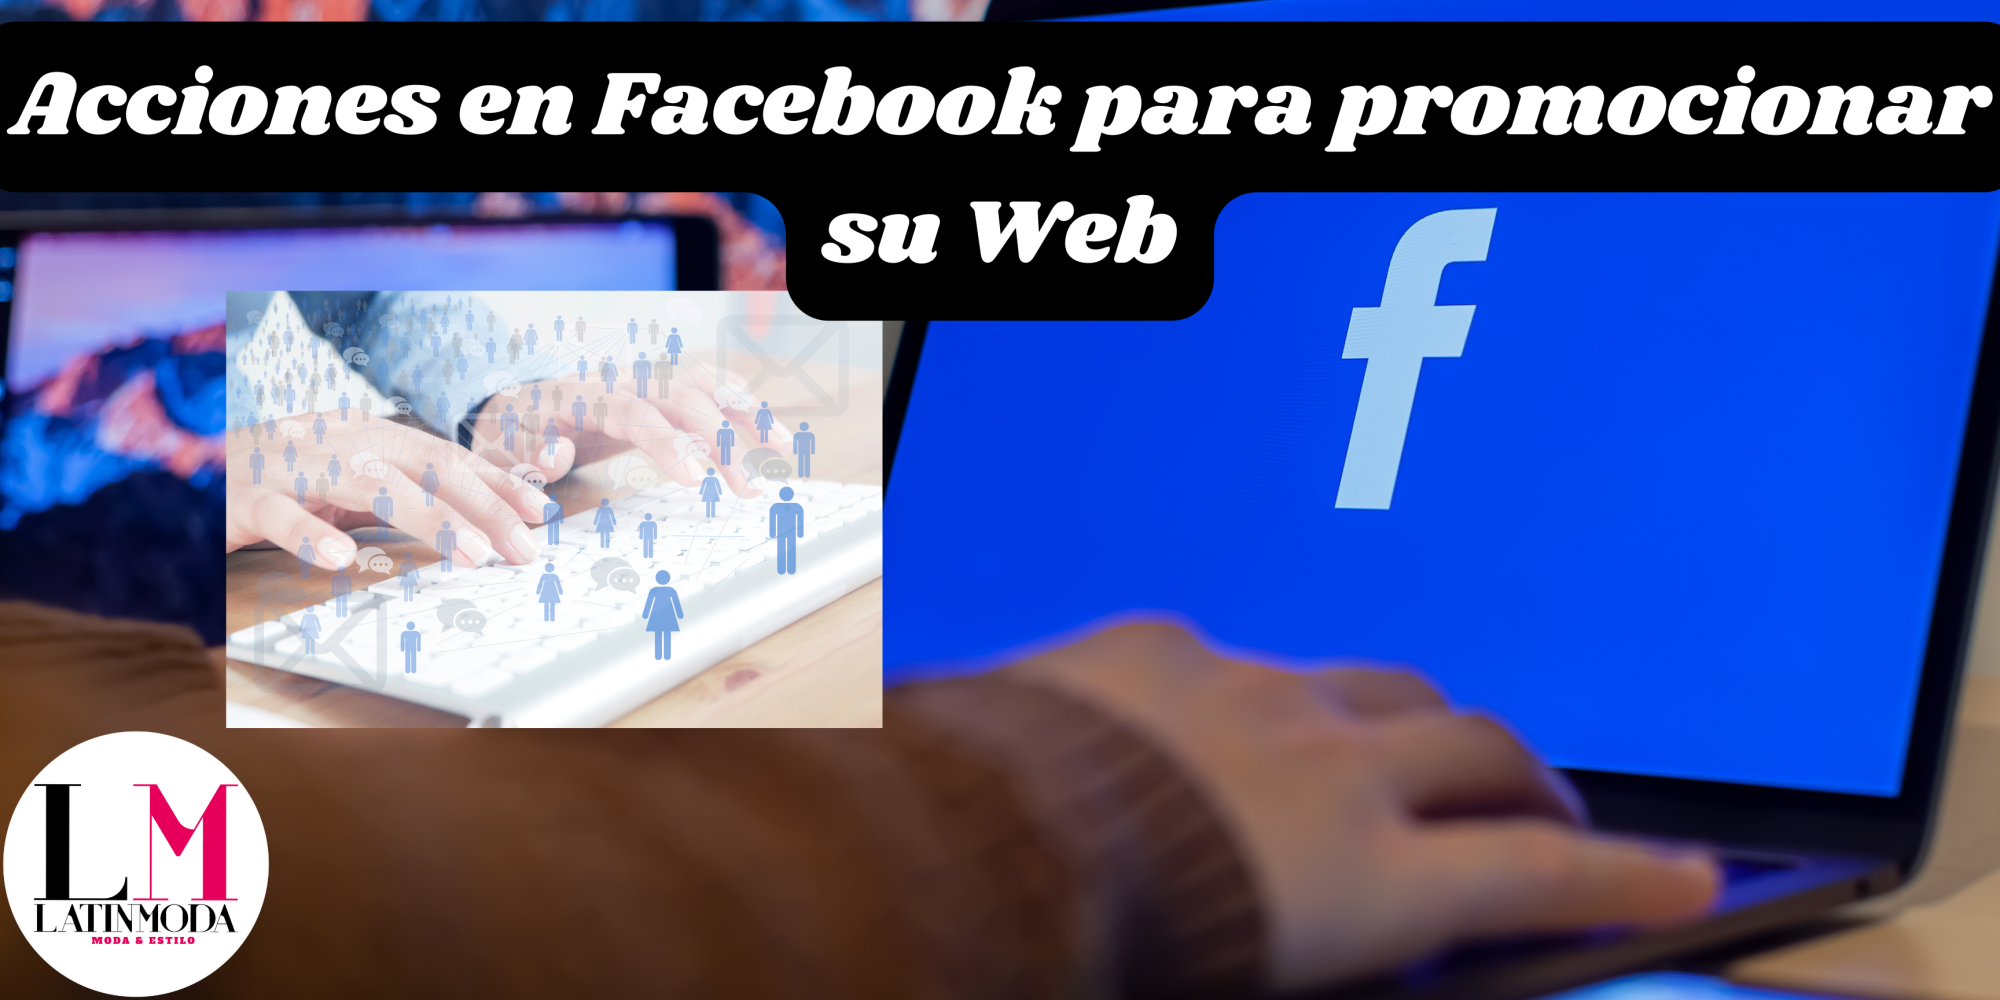 Acciones en Facebook para promocionar su Web